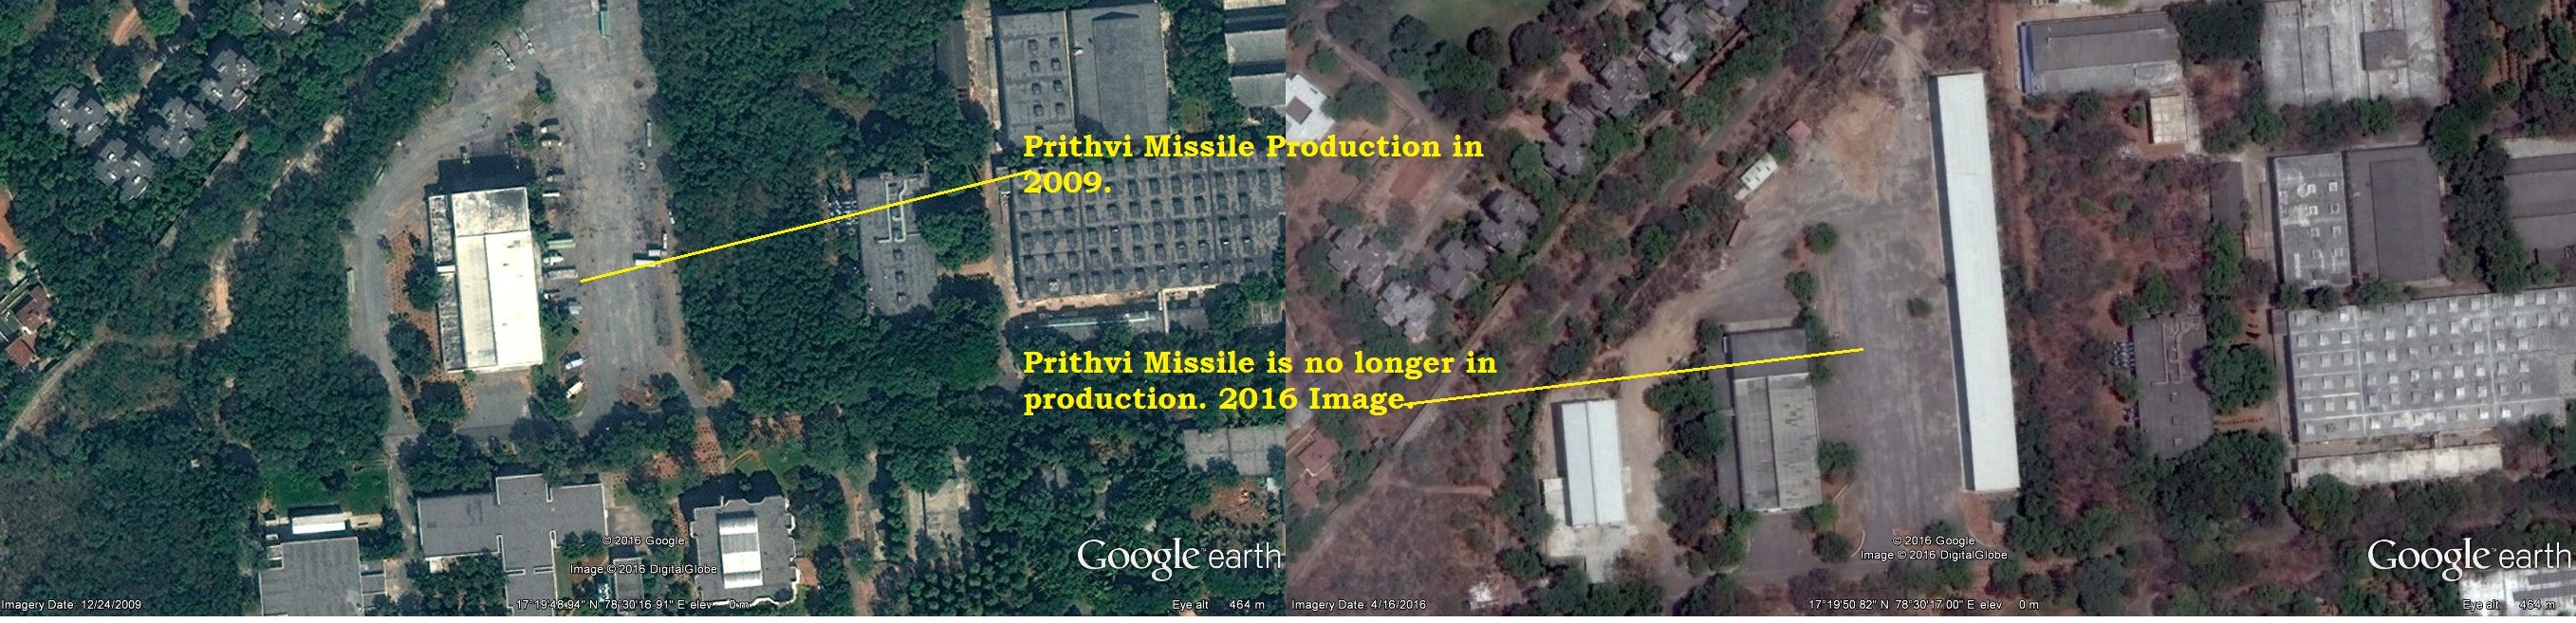 Prithvi Missile.jpg